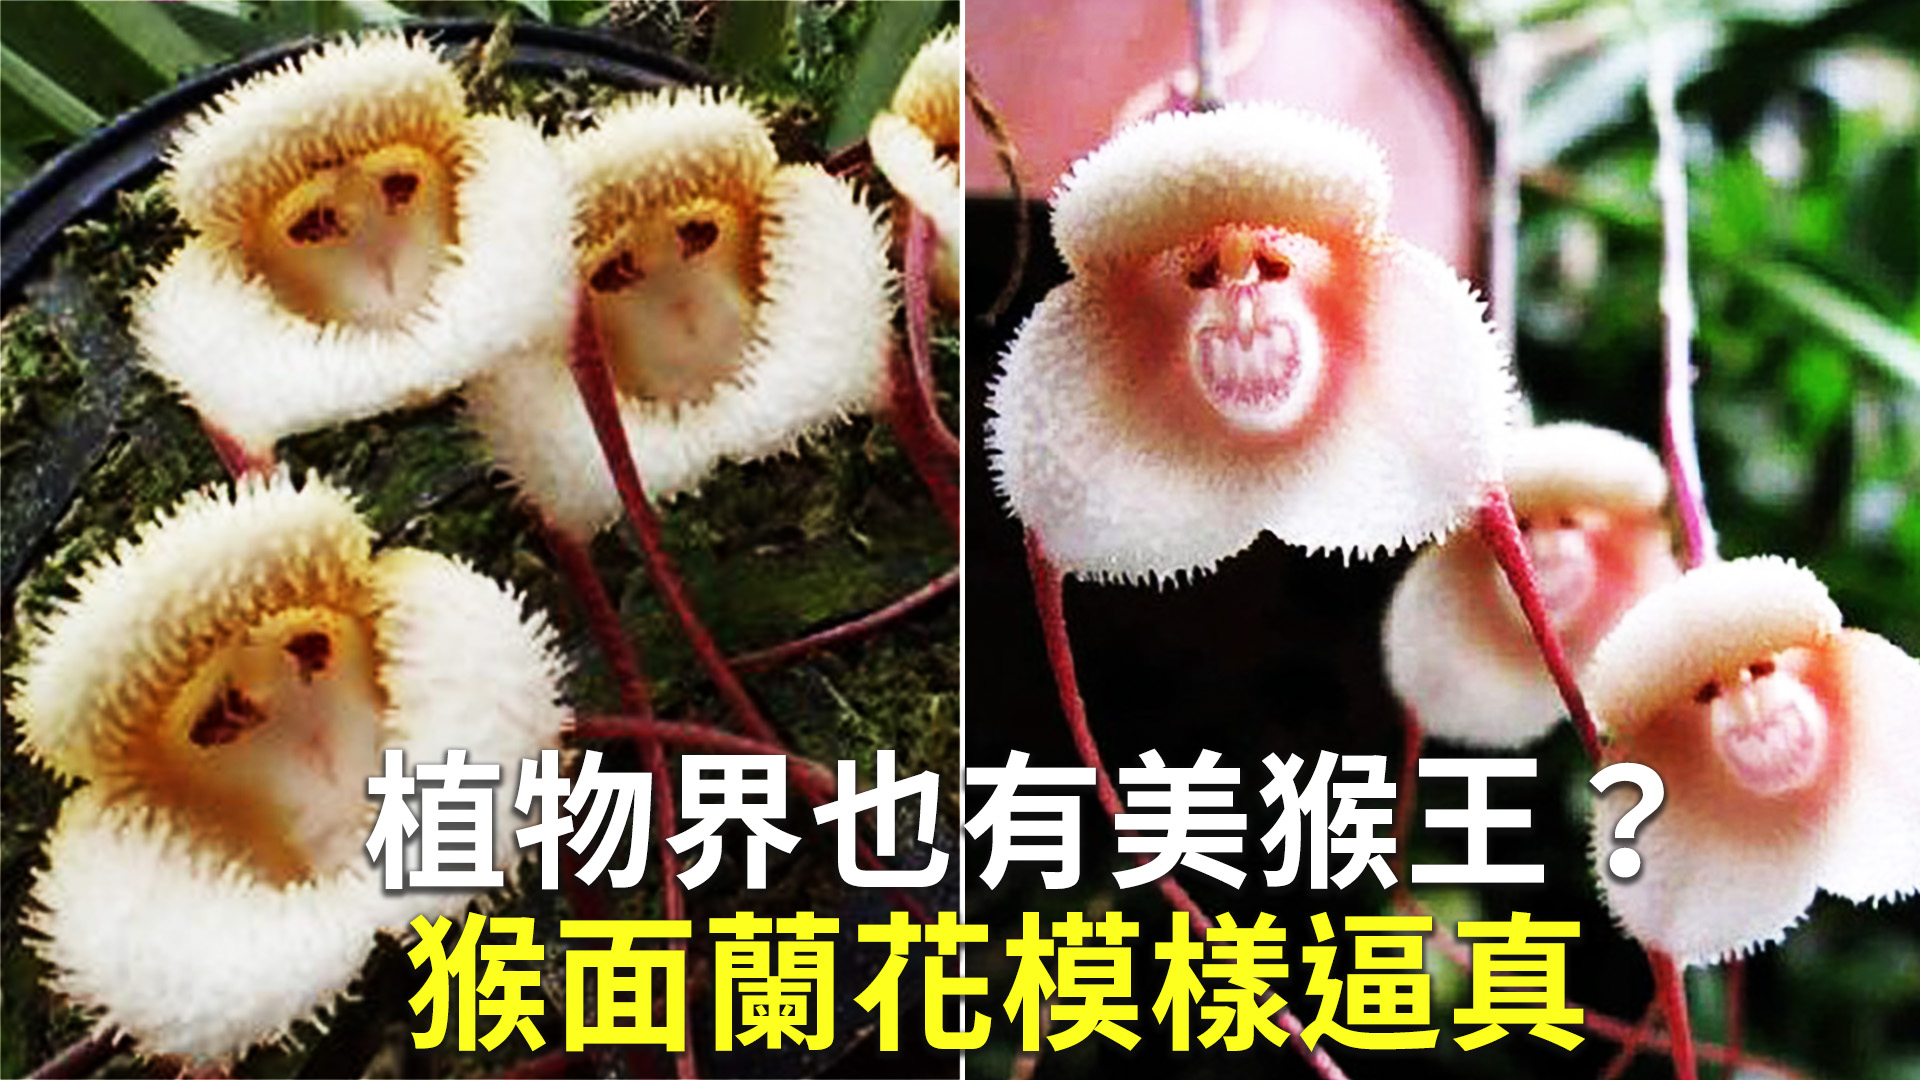 猴面花图片_猴面花的花朵图片大全 - 花卉网